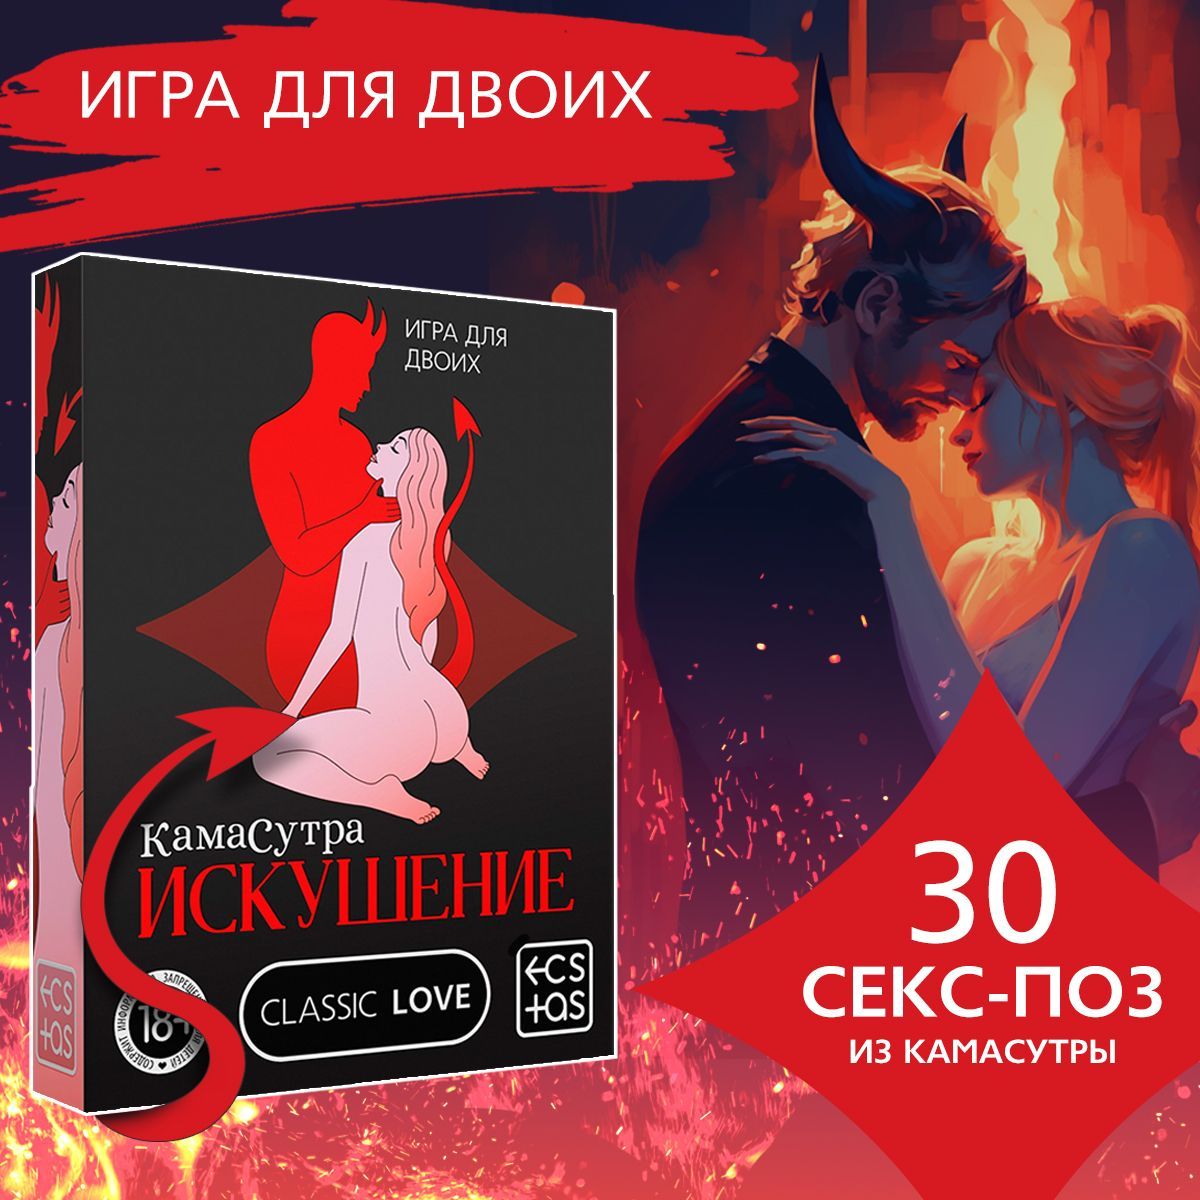 Скретч-игра Ecstas Секс-гид Камасутра – купить по цене ₽ в real-watch.ru